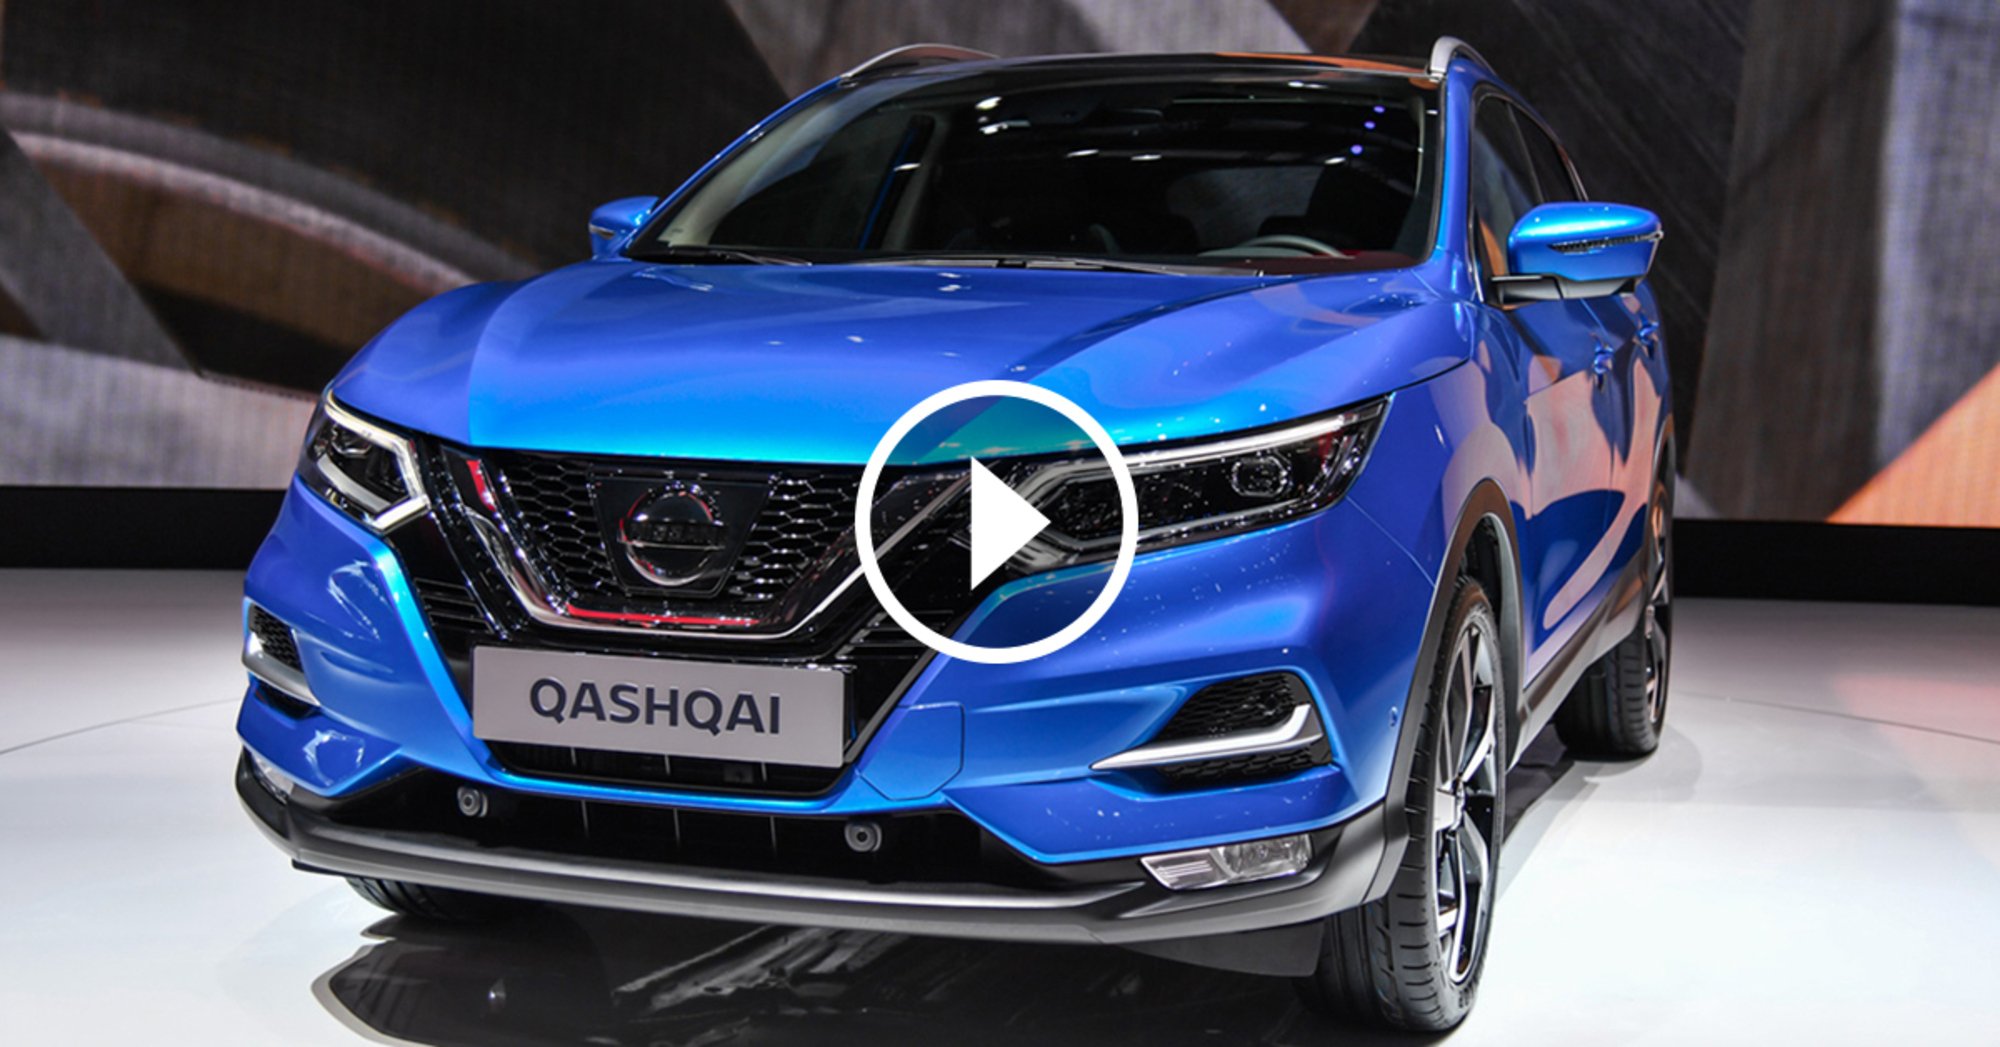 Nuova Nissan Qashqai, la videorecensione al Salone di Ginevra 2017 [Video]